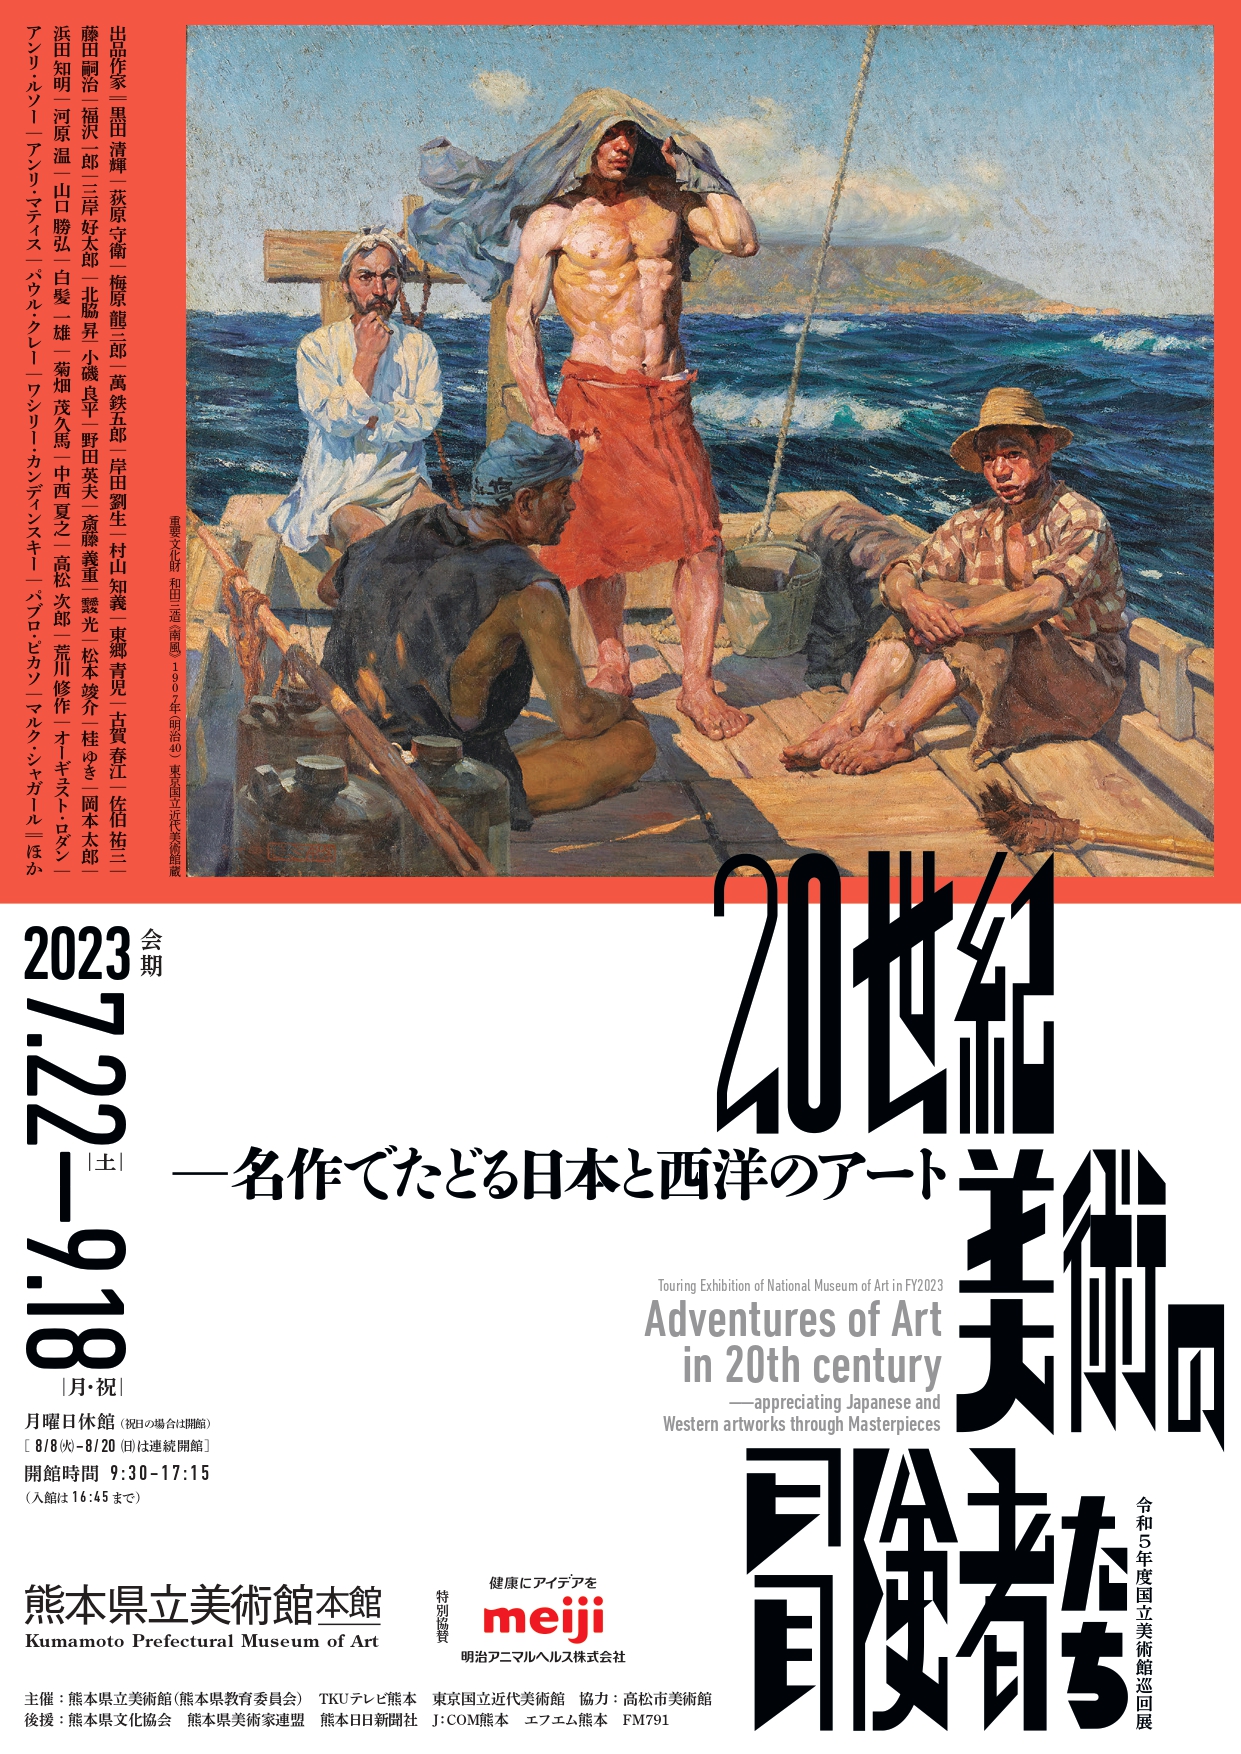 再再販日本の20世紀芸術 = The 20th Century Art in Jap… アート・デザイン・音楽